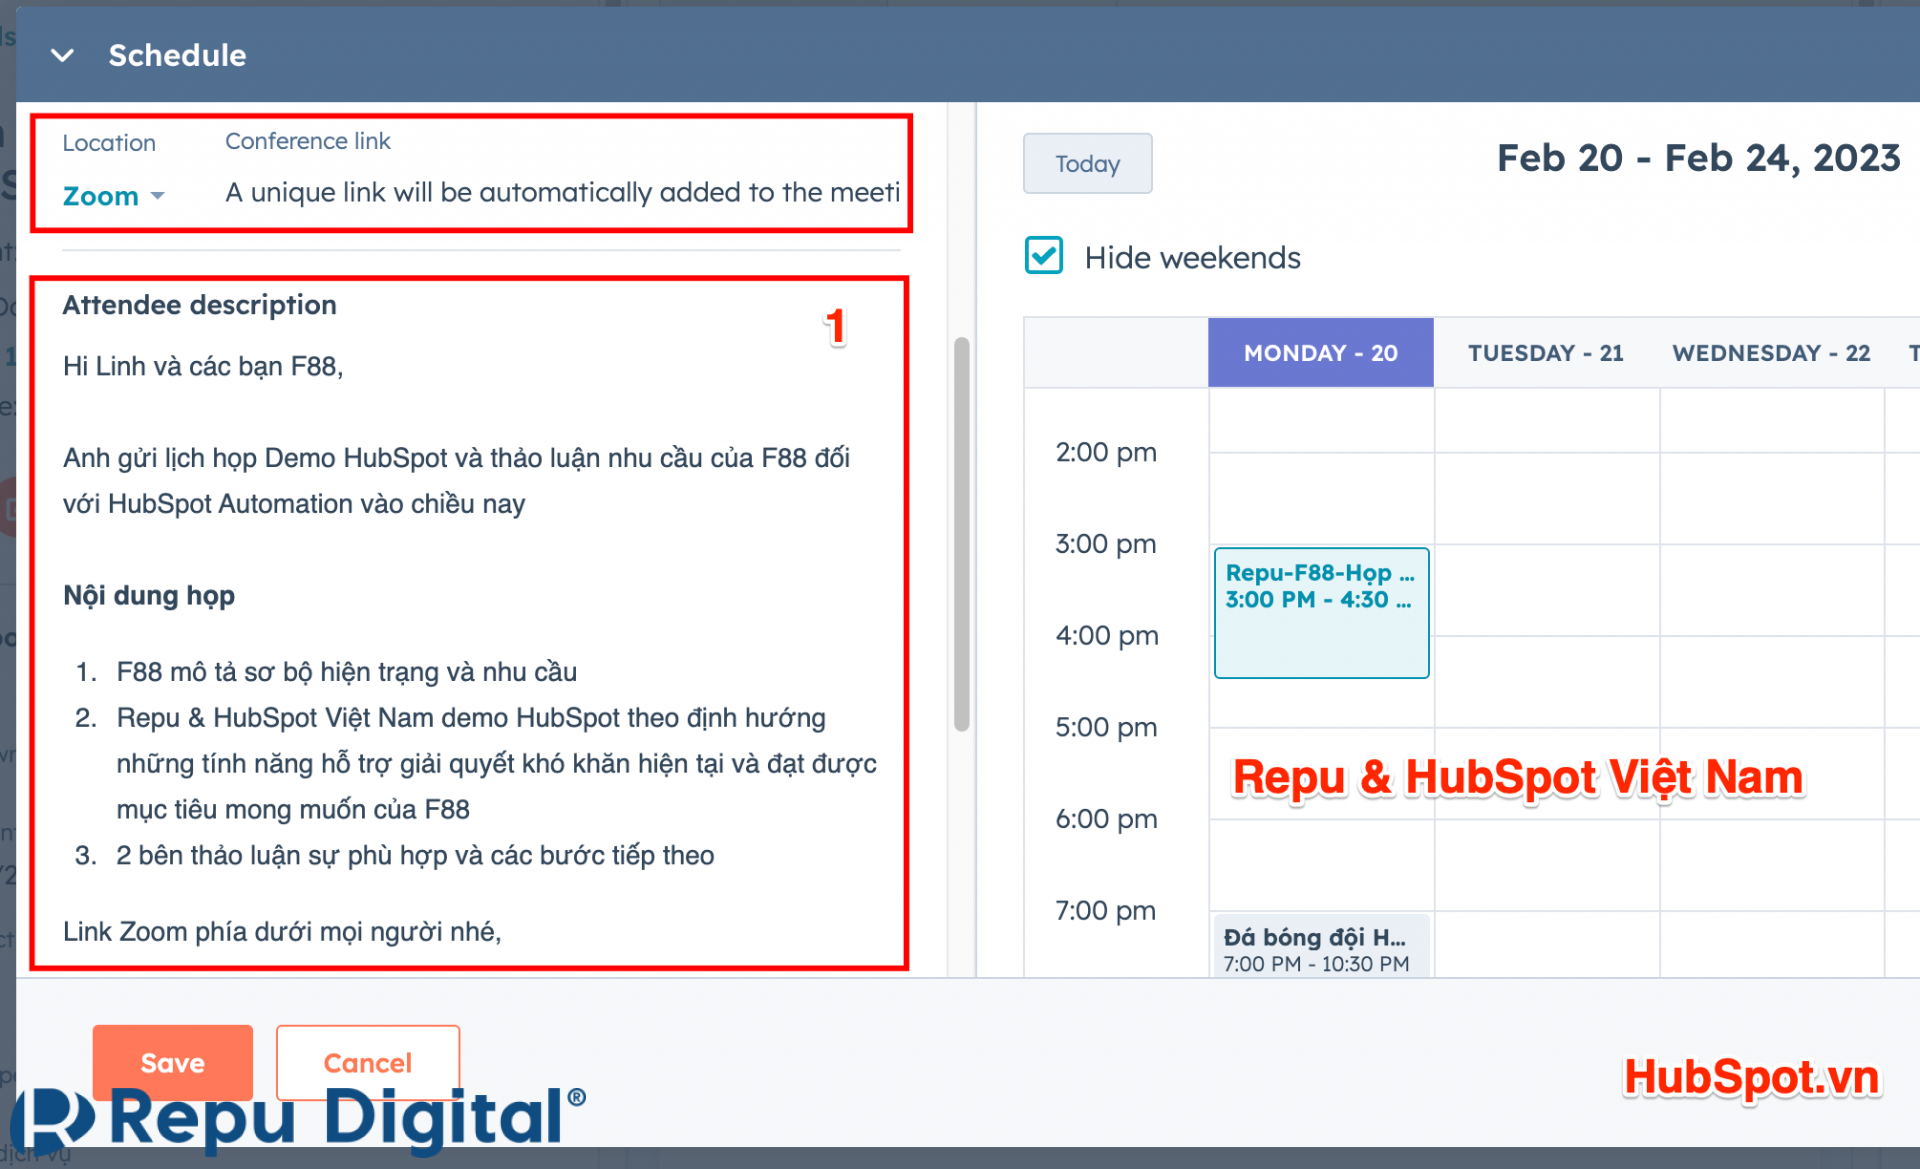 Hướng dẫn tạo lịch họp trong HubSpot Meeting - Nhập nội dung mời họp (tương tự email mời họp)